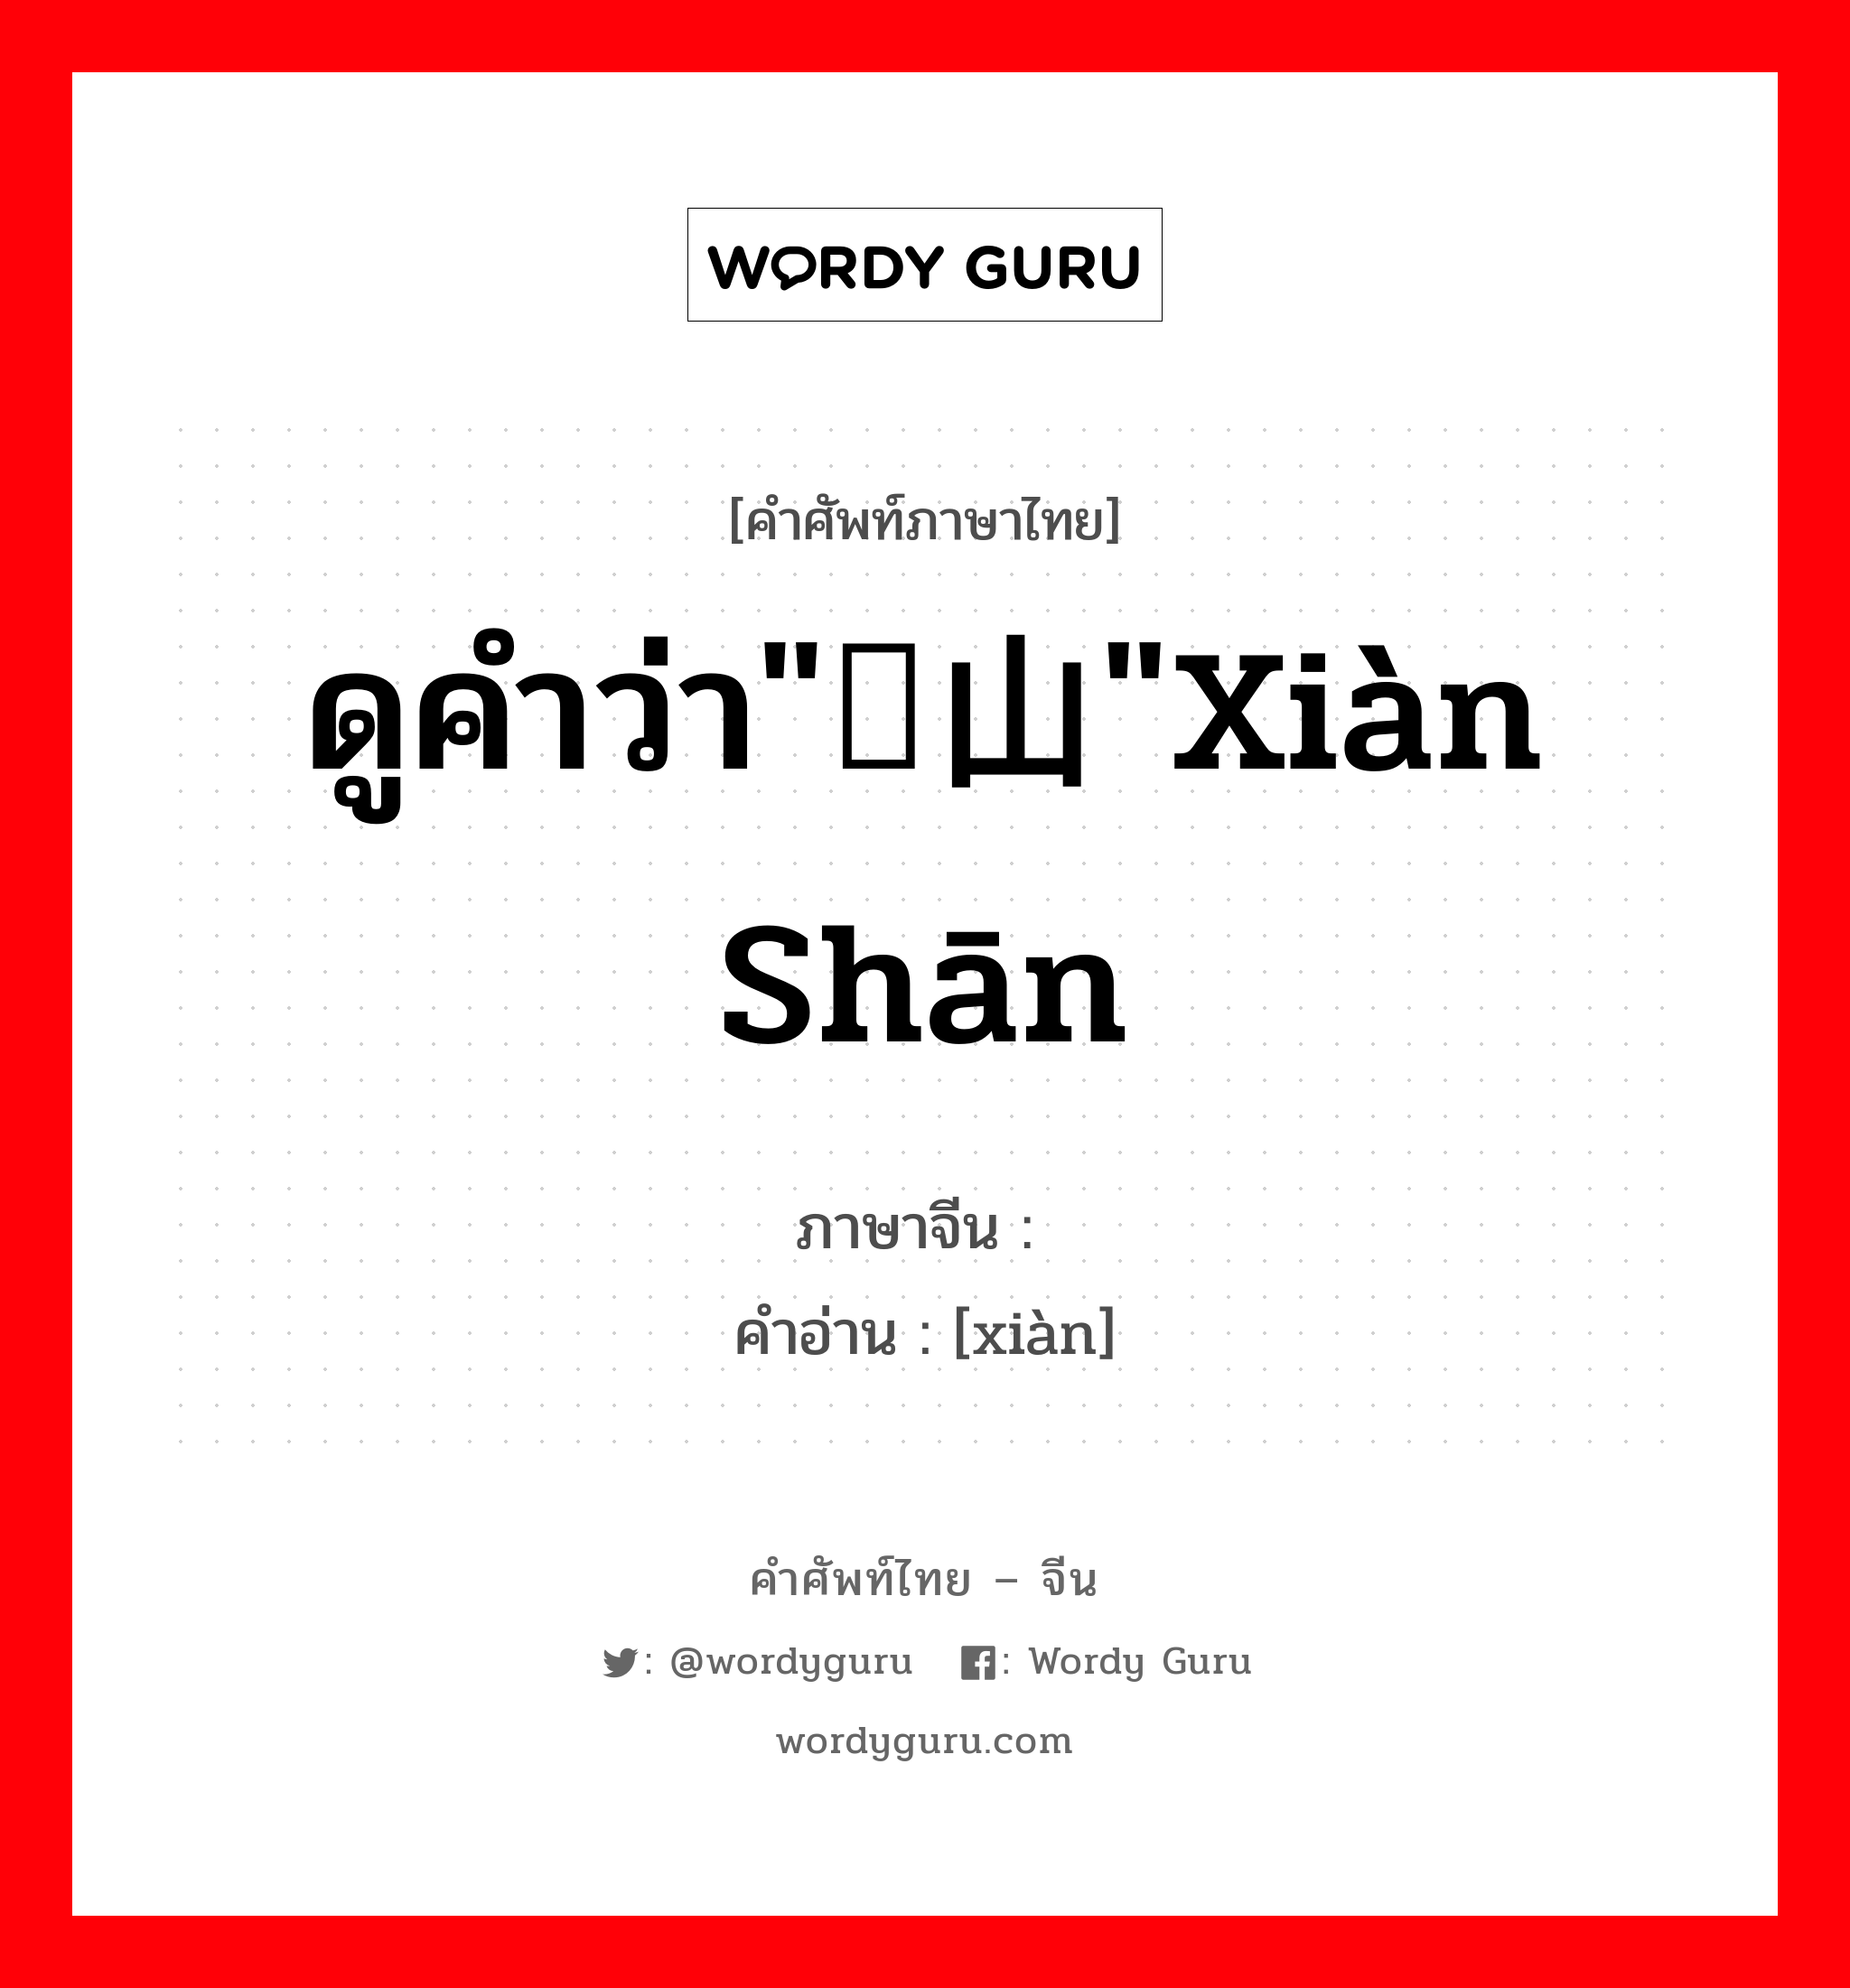 ดูคำว่า"岘山"xiàn shān ภาษาจีนคืออะไร, คำศัพท์ภาษาไทย - จีน ดูคำว่า"岘山"xiàn shān ภาษาจีน 岘 คำอ่าน [xiàn]